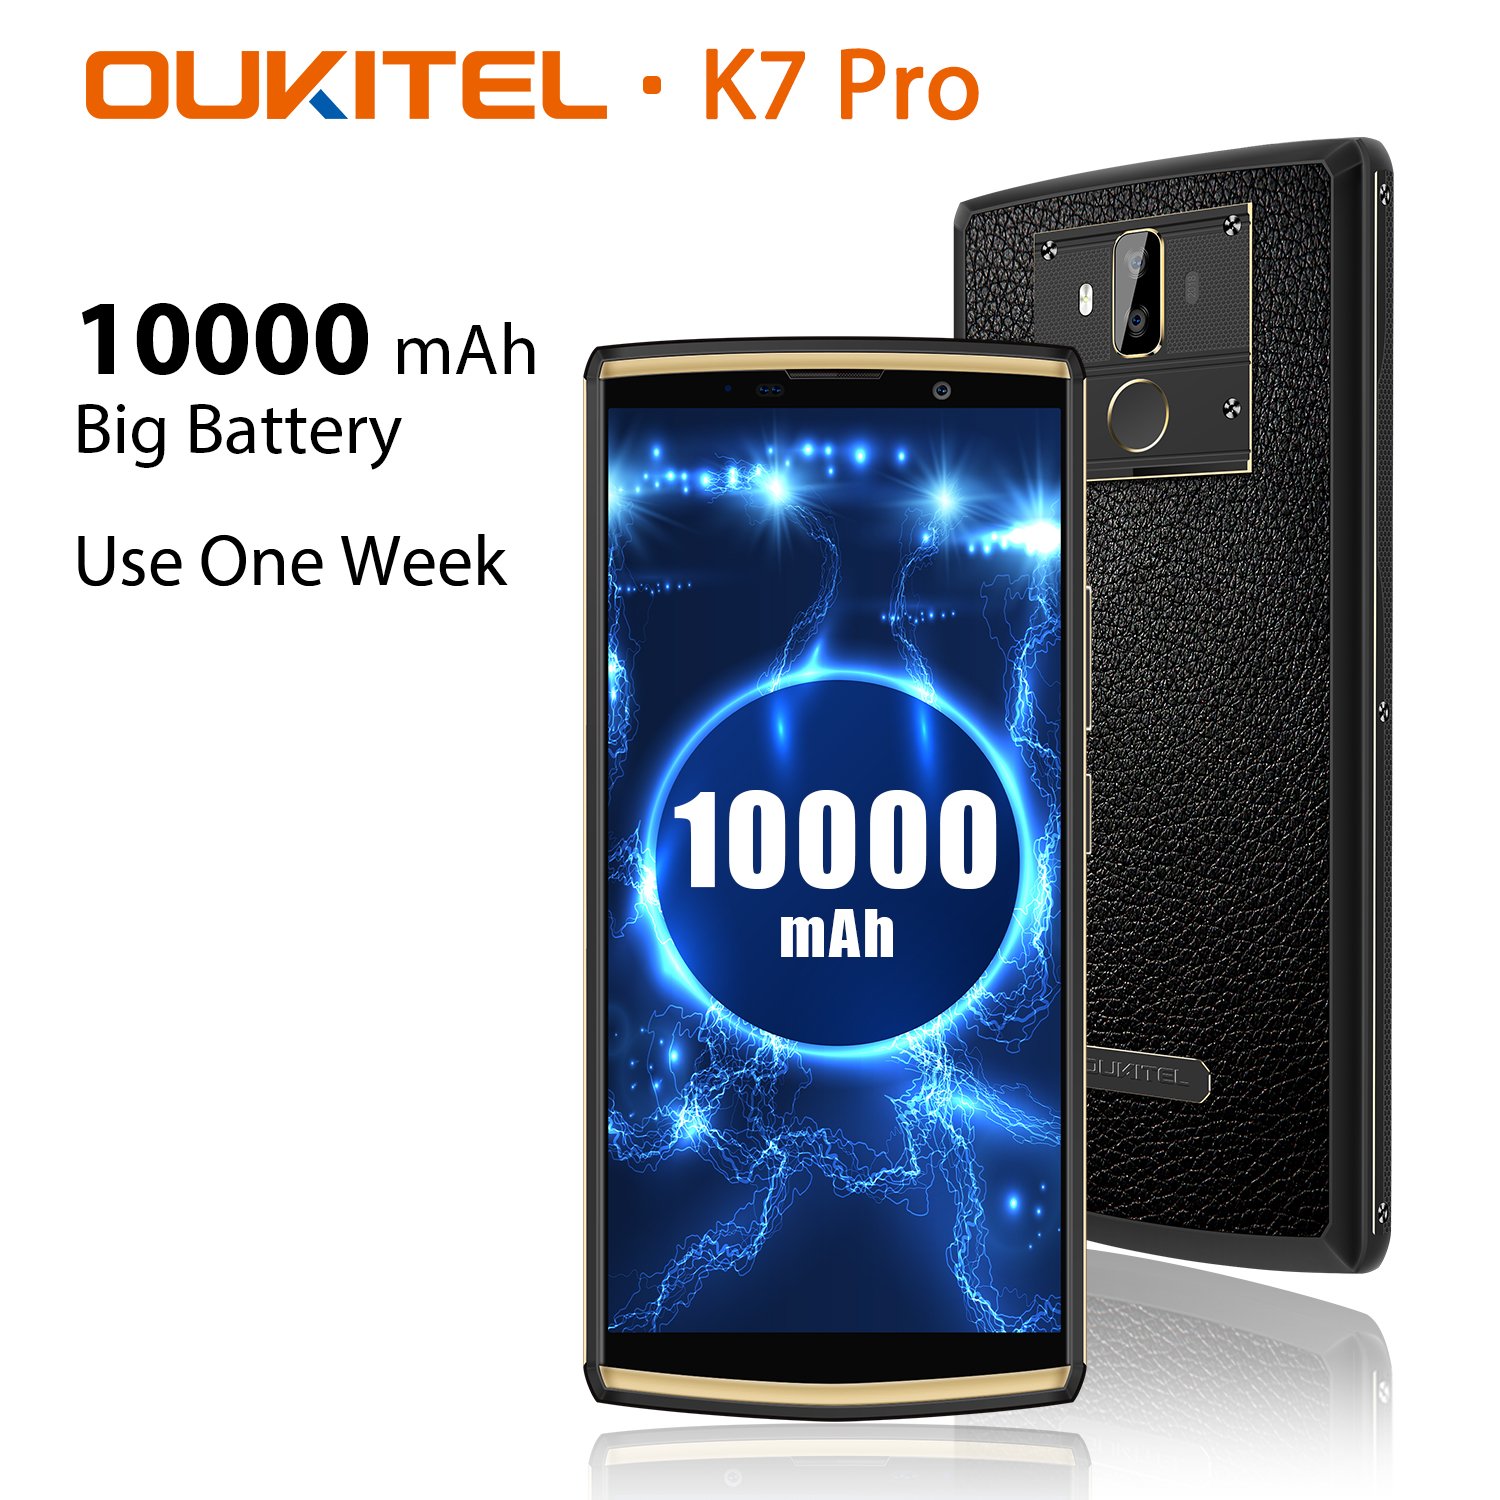 Oukitel K7 Pro